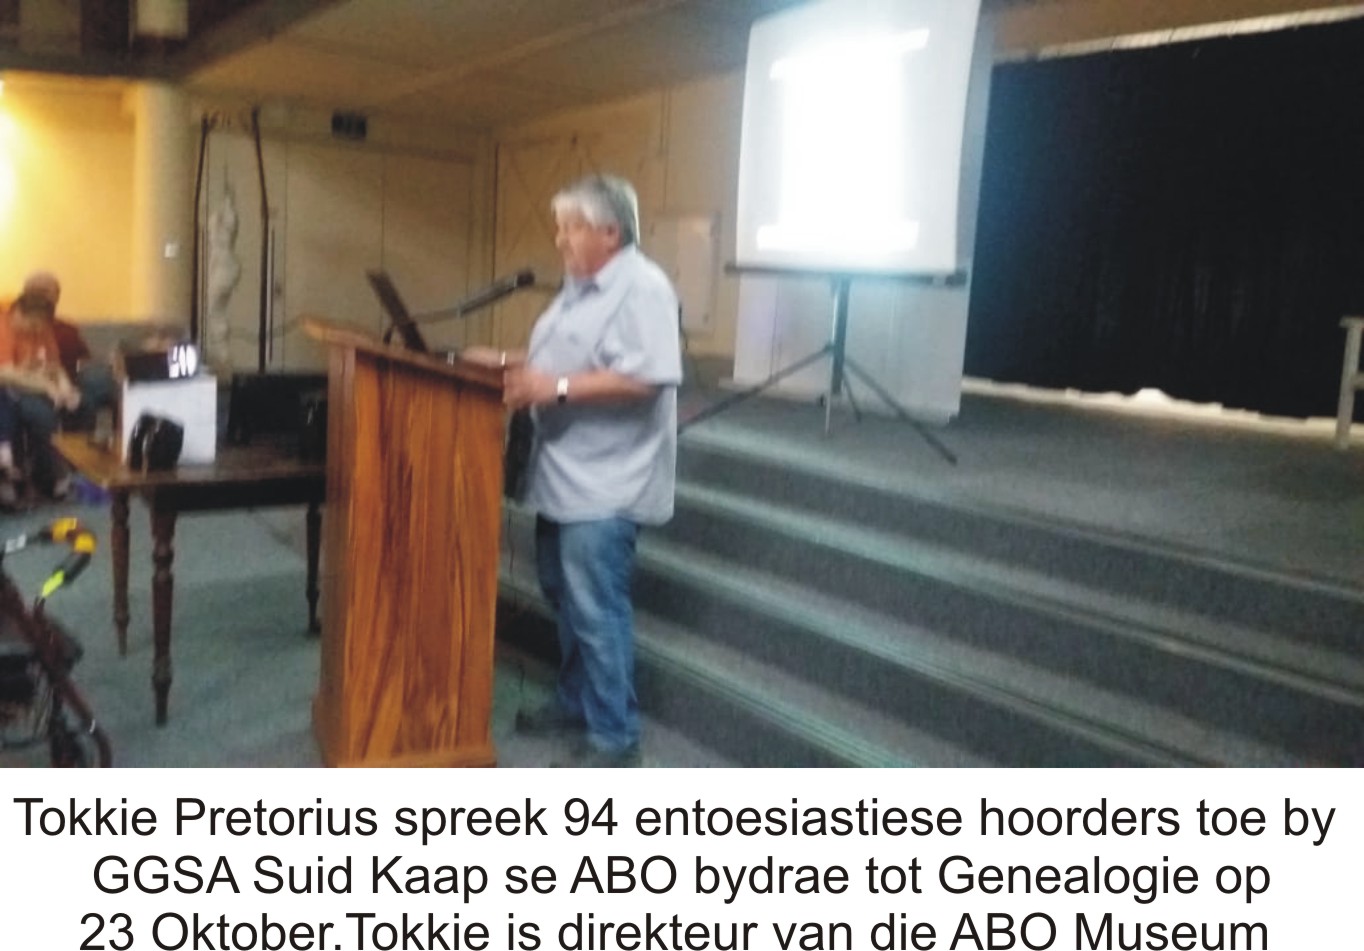 Tokkie Pretorius spreek 94 entoesiastiese hoorders toe by GGSA Suid Kaap se ABO bydrae tot Genealogie op 23 Oktober.Tokkie is direkteur van die ABO Museum